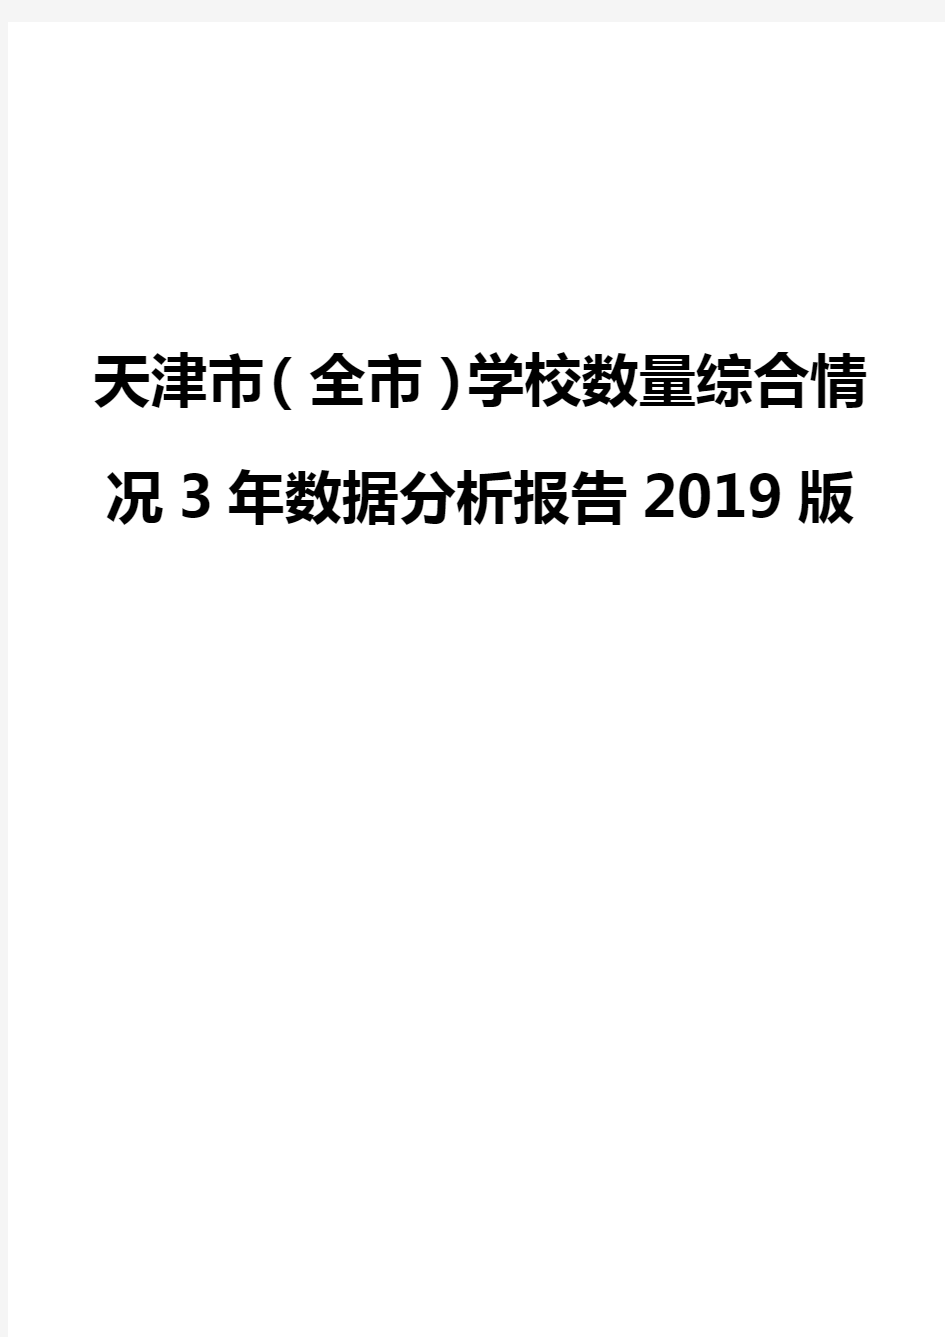 天津市(全市)学校数量综合情况3年数据分析报告2019版